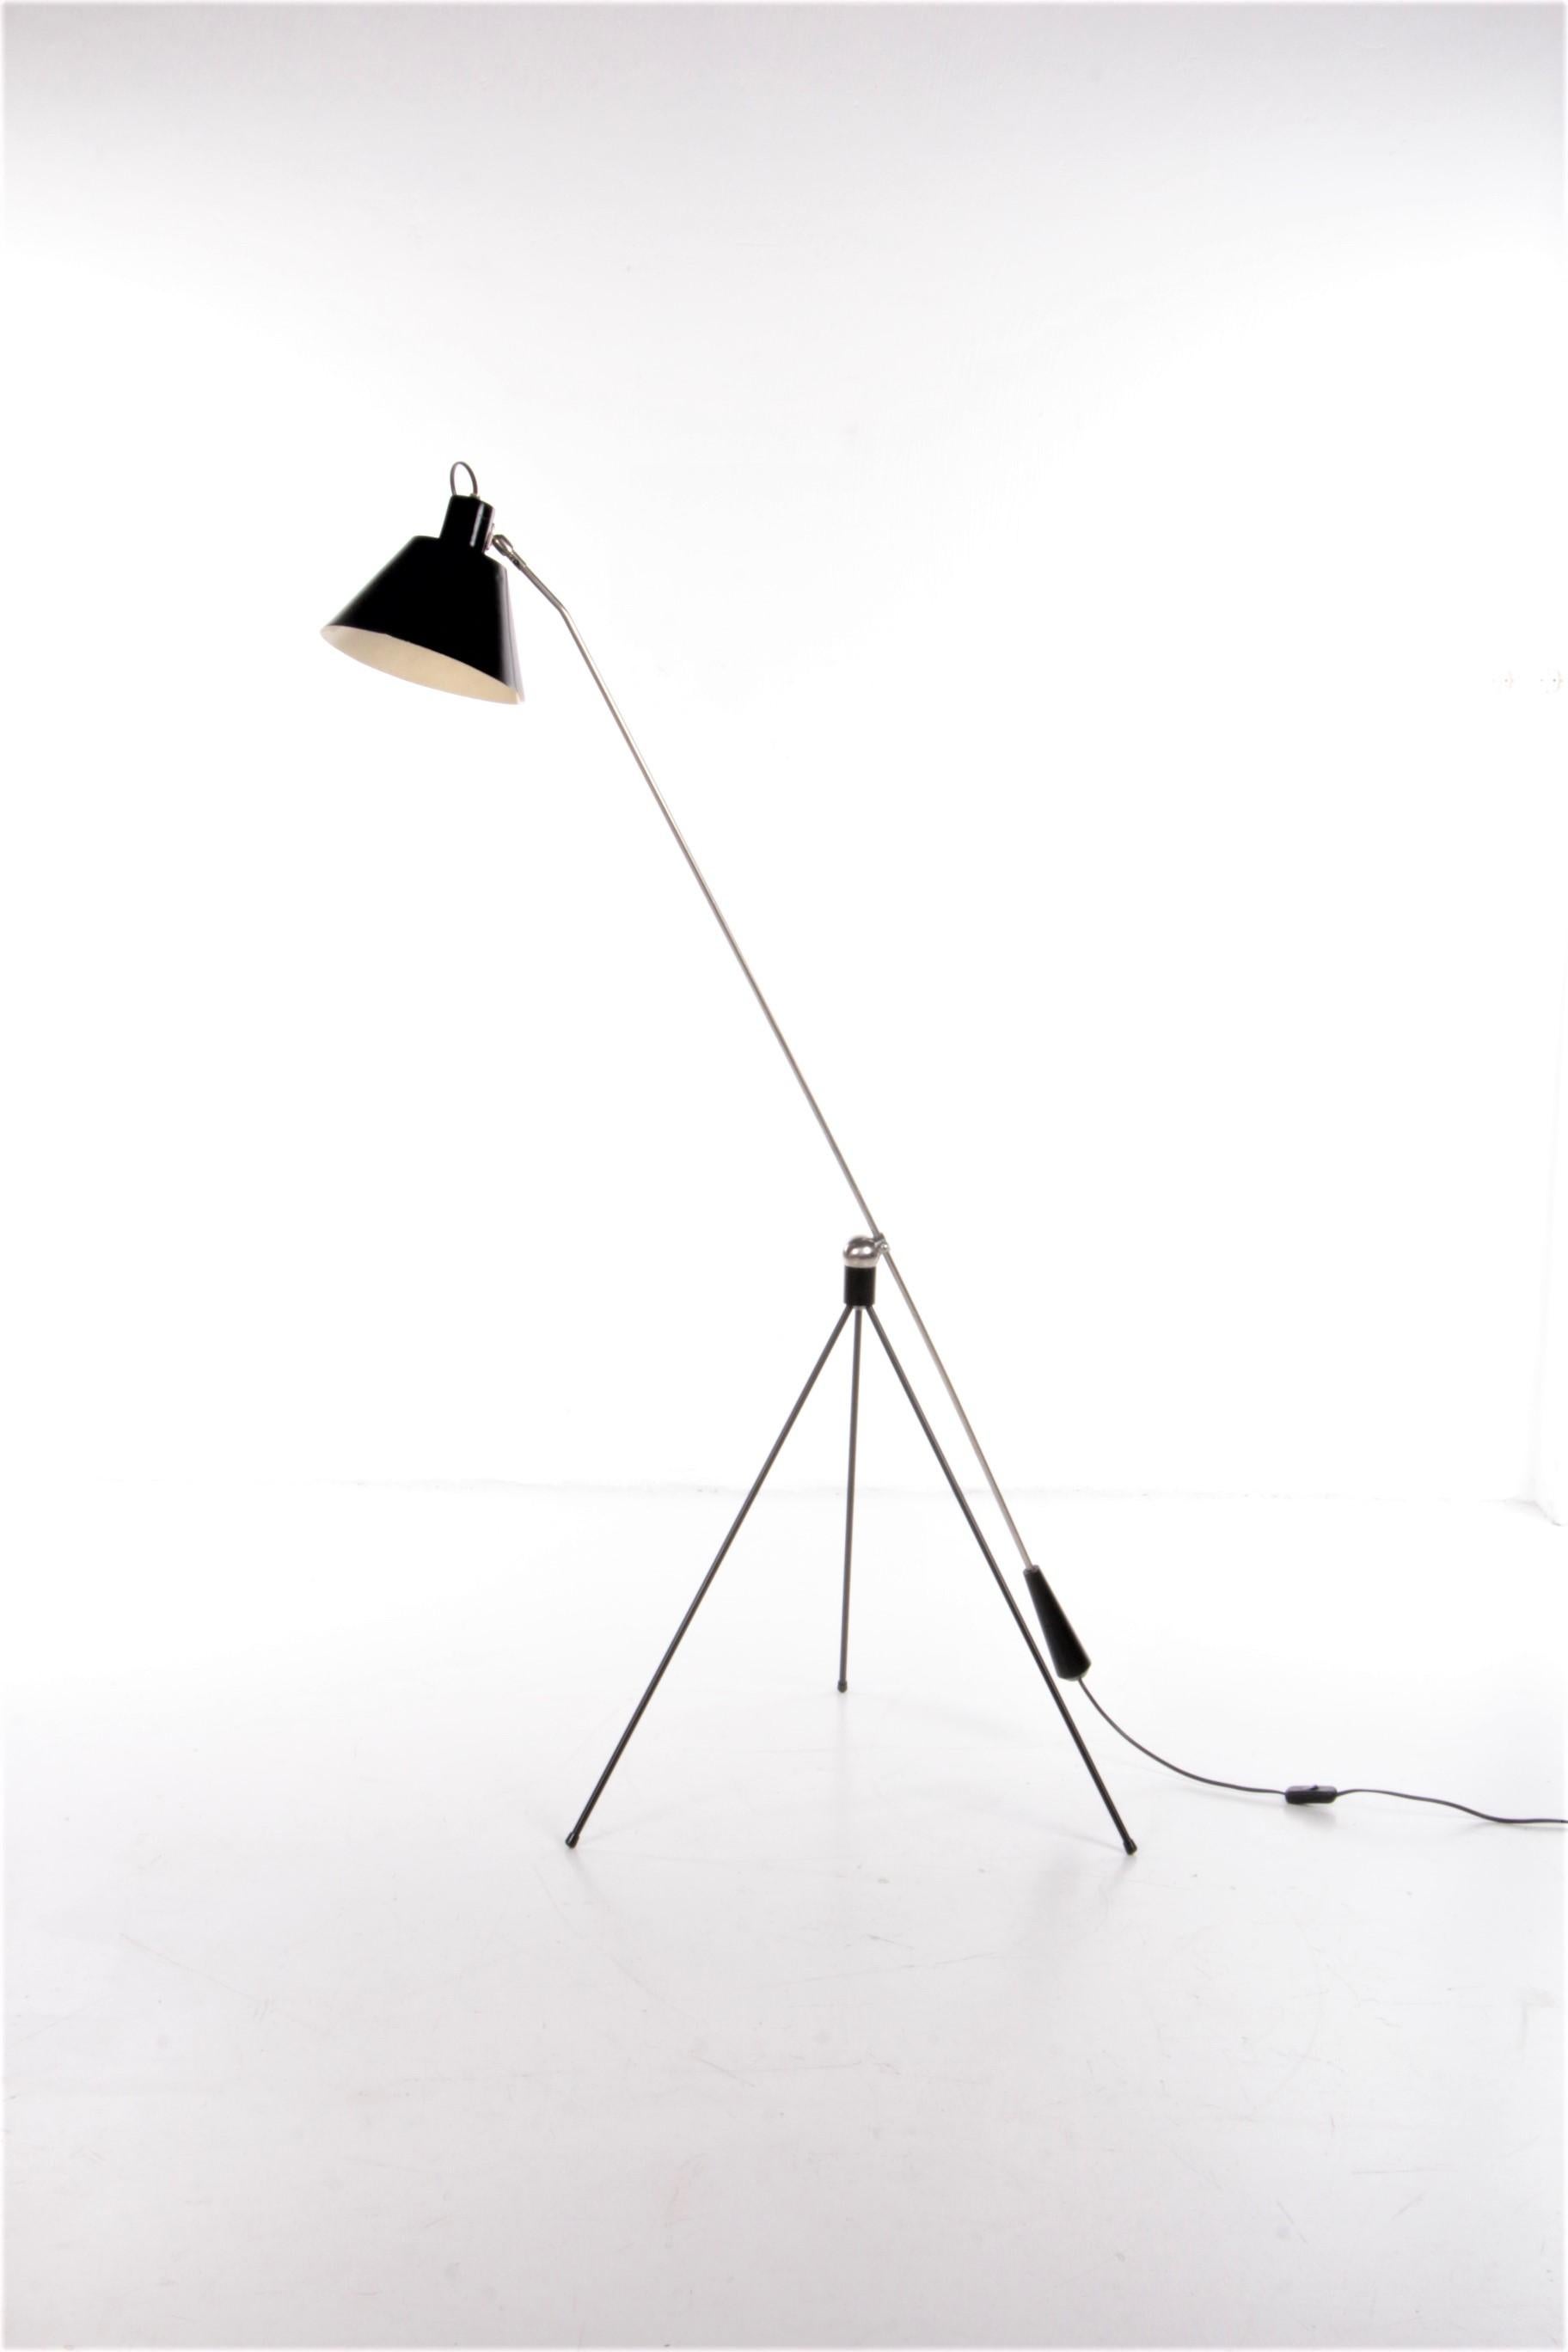 Artiforte Magneto Stehleuchte Entwurf von H. Fillekes 1950er Jahre Niederlande


Sehr seltene Stehlampe von der niederländischen Marke Artiforte, nicht zu verwechseln mit der Möbelmarke Artifort.
Diese Lampe, ein Entwurf von H. Fillekes, wurde